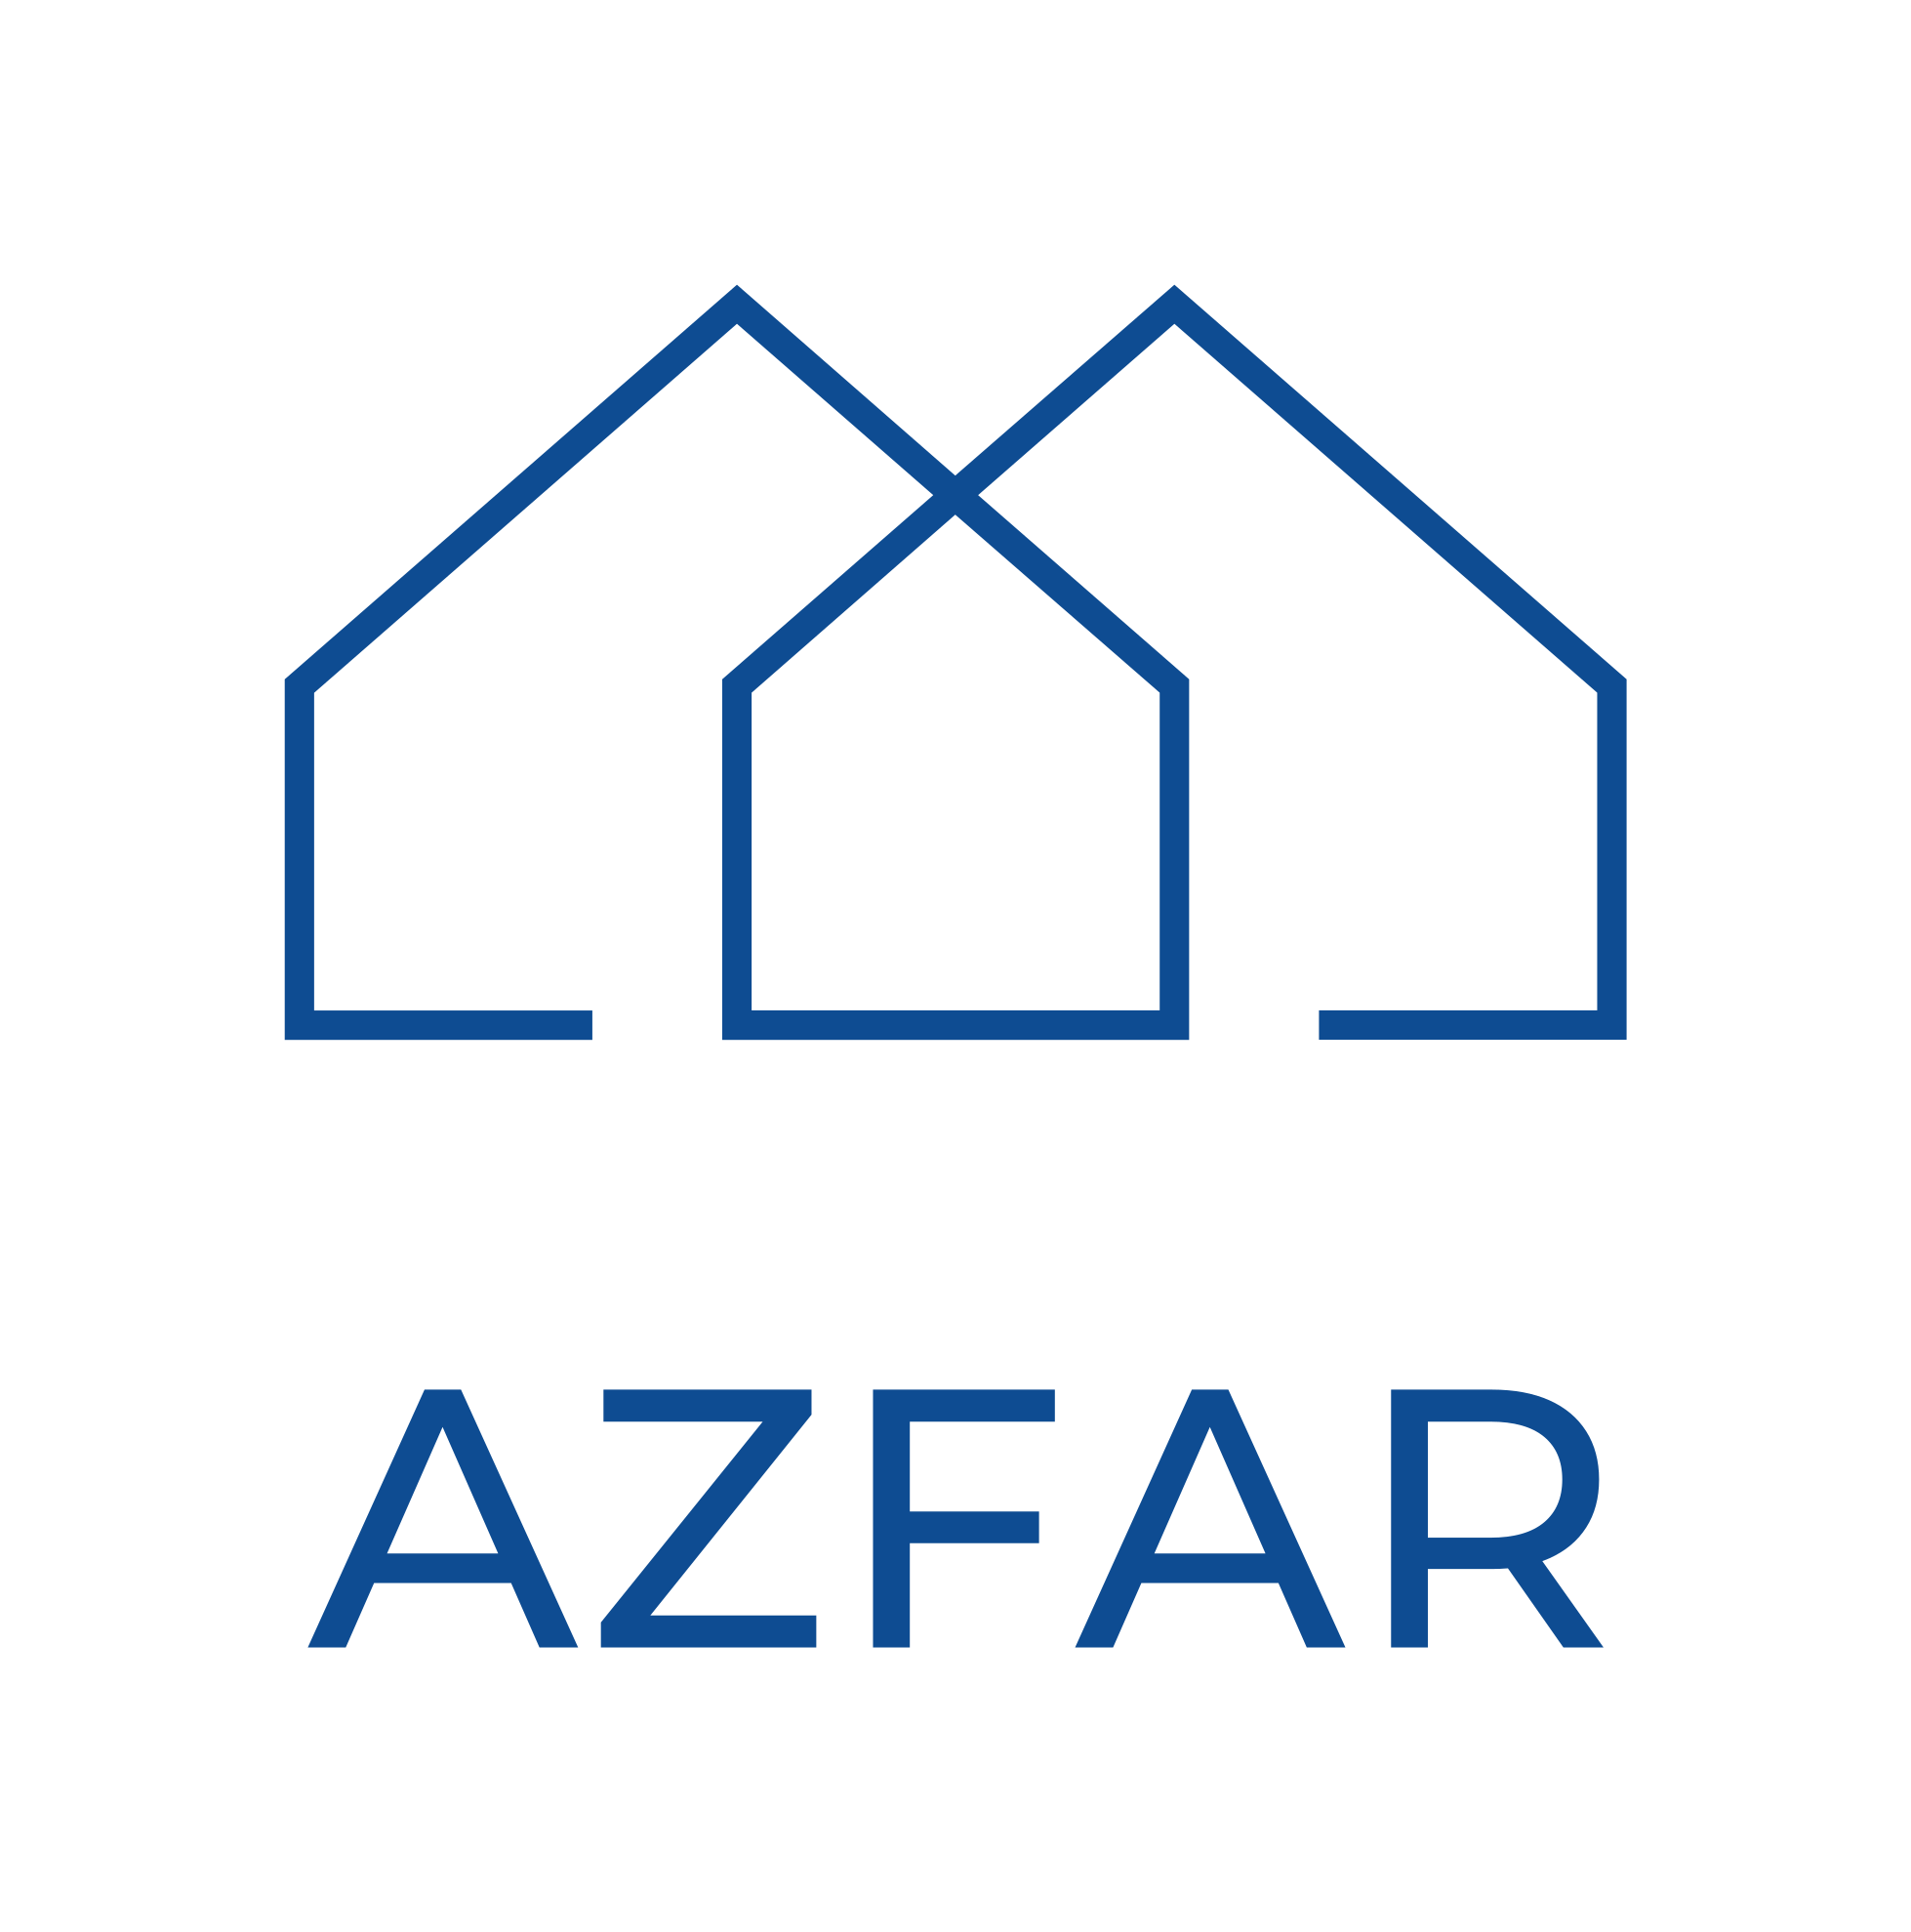 azfar.com